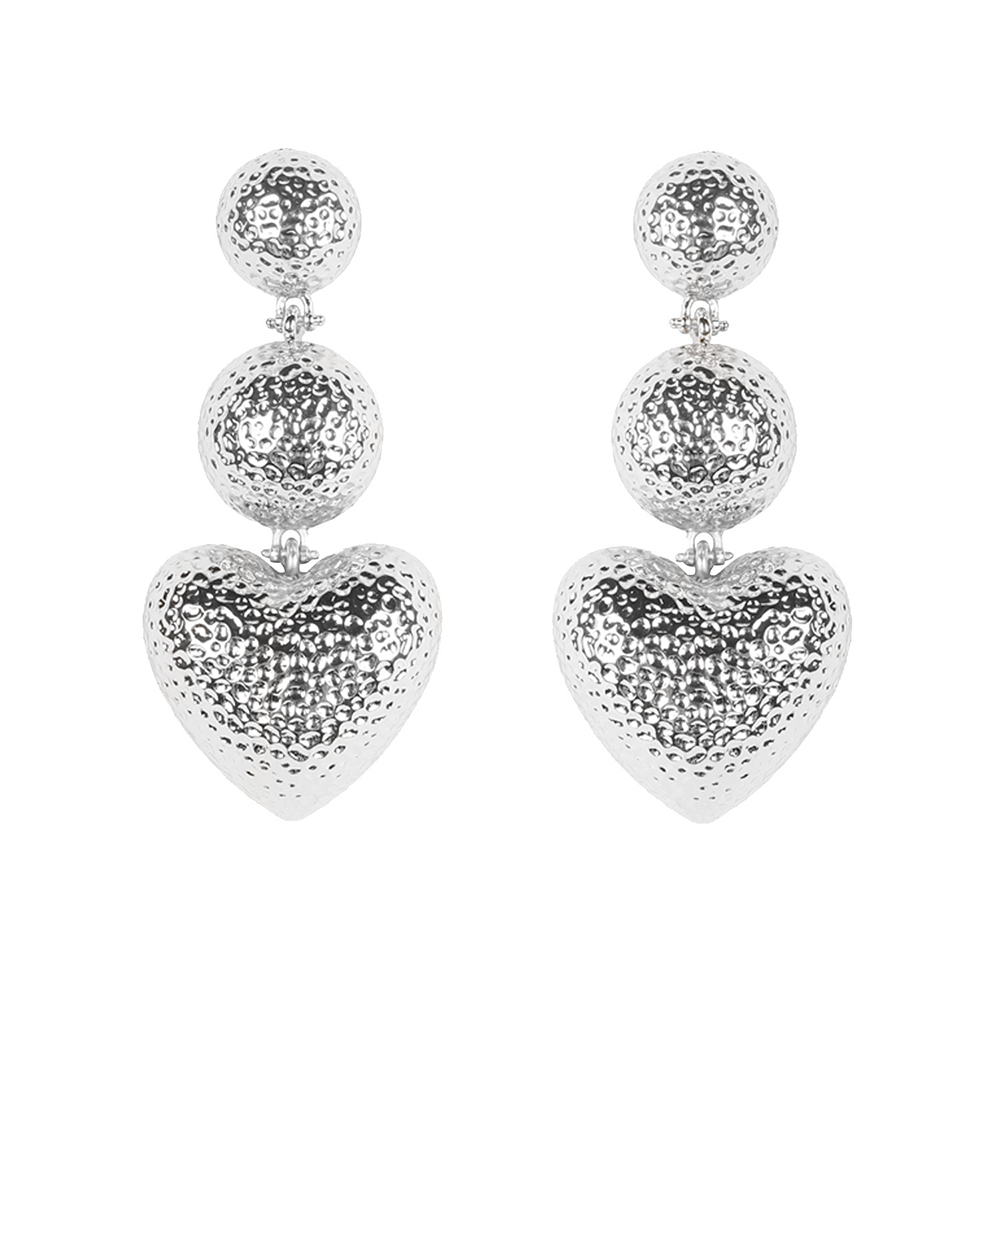 Ruby earrings, $45